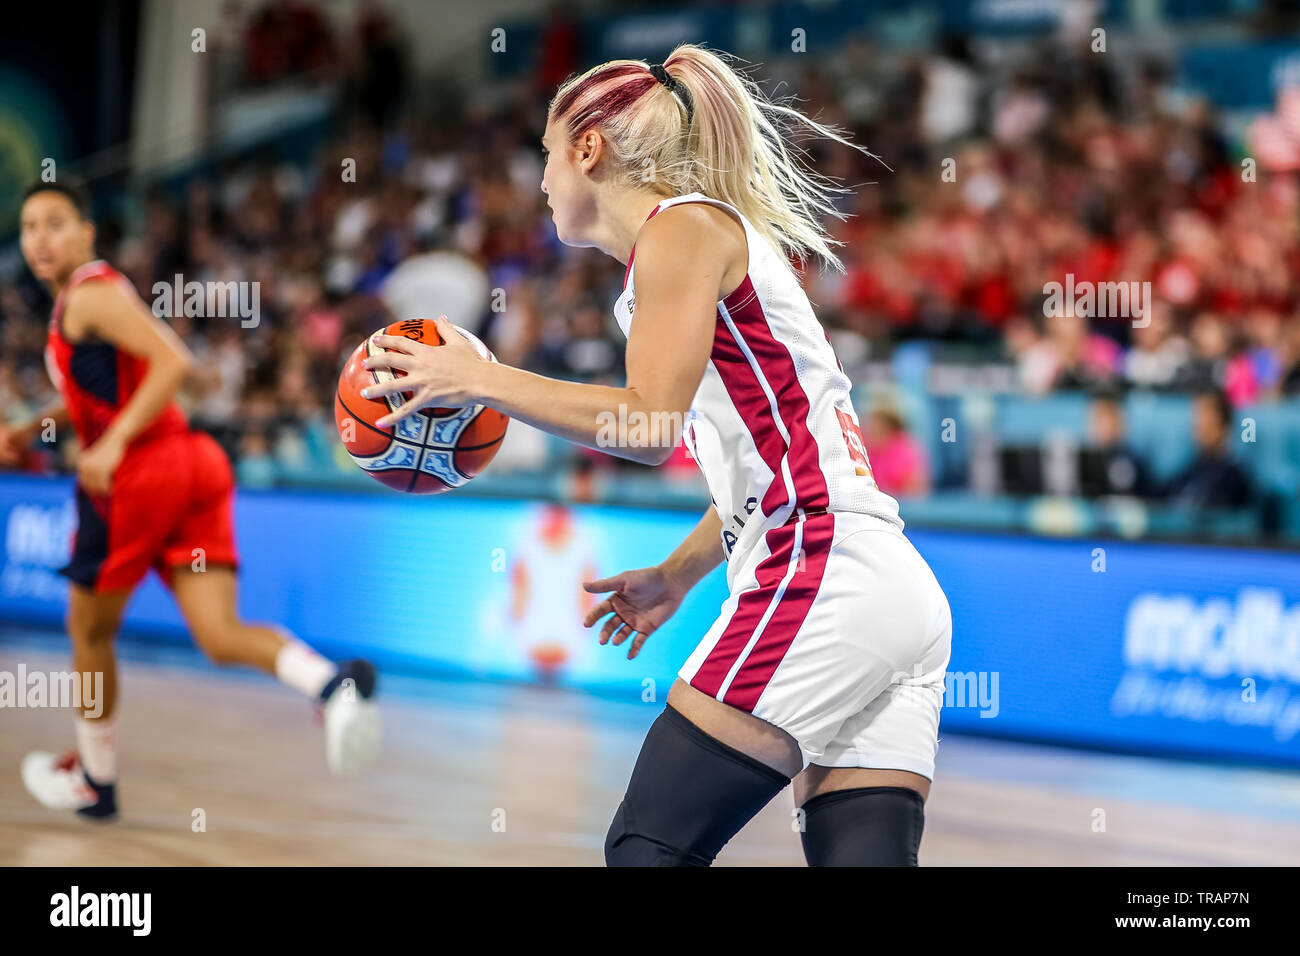 Tenerife, Espagne, le 25 septembre 2018 : joueur de basket-ball lettonne Elina Babkina en action au cours de basket-ball match Lettonie vs USA. Banque D'Images